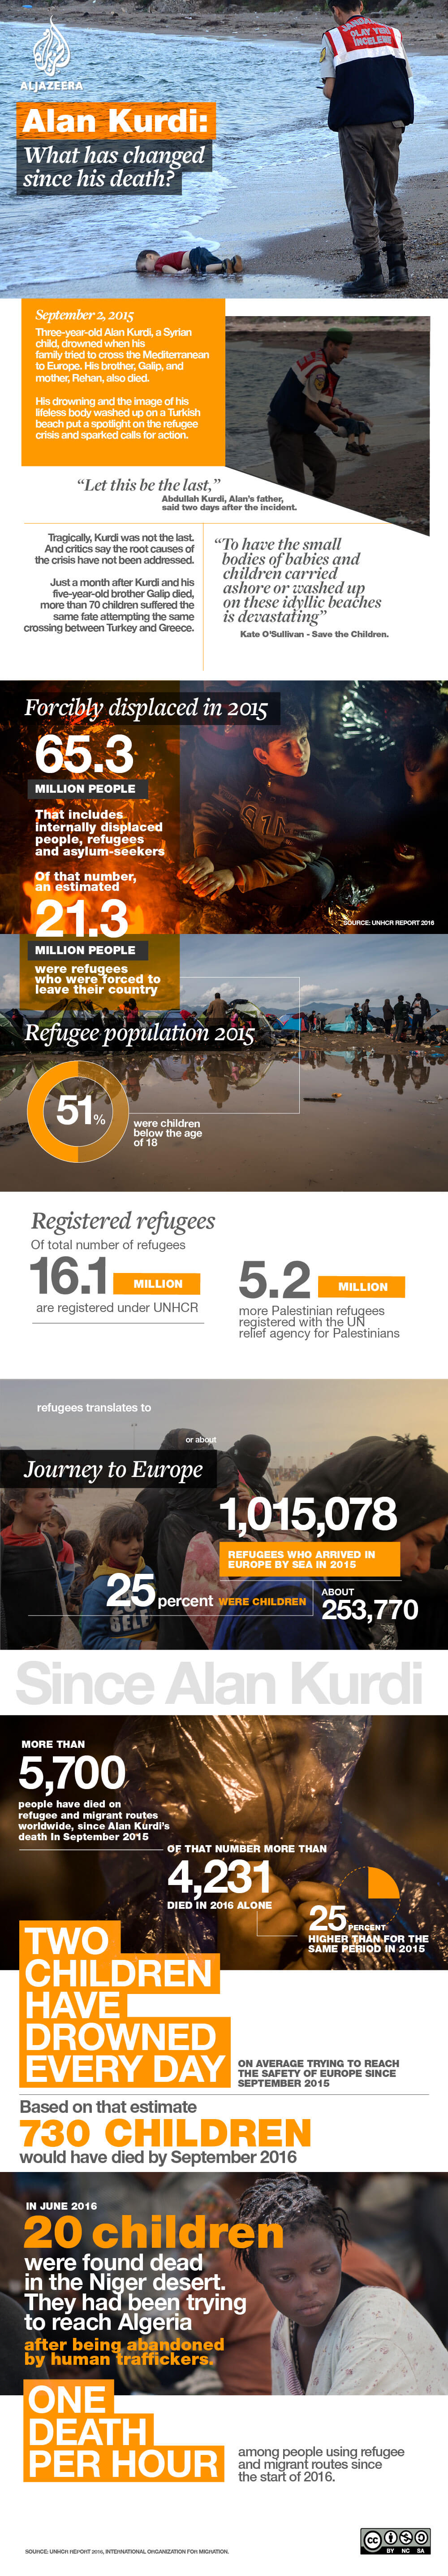 alan aylan kurdi infographic refugee turkey